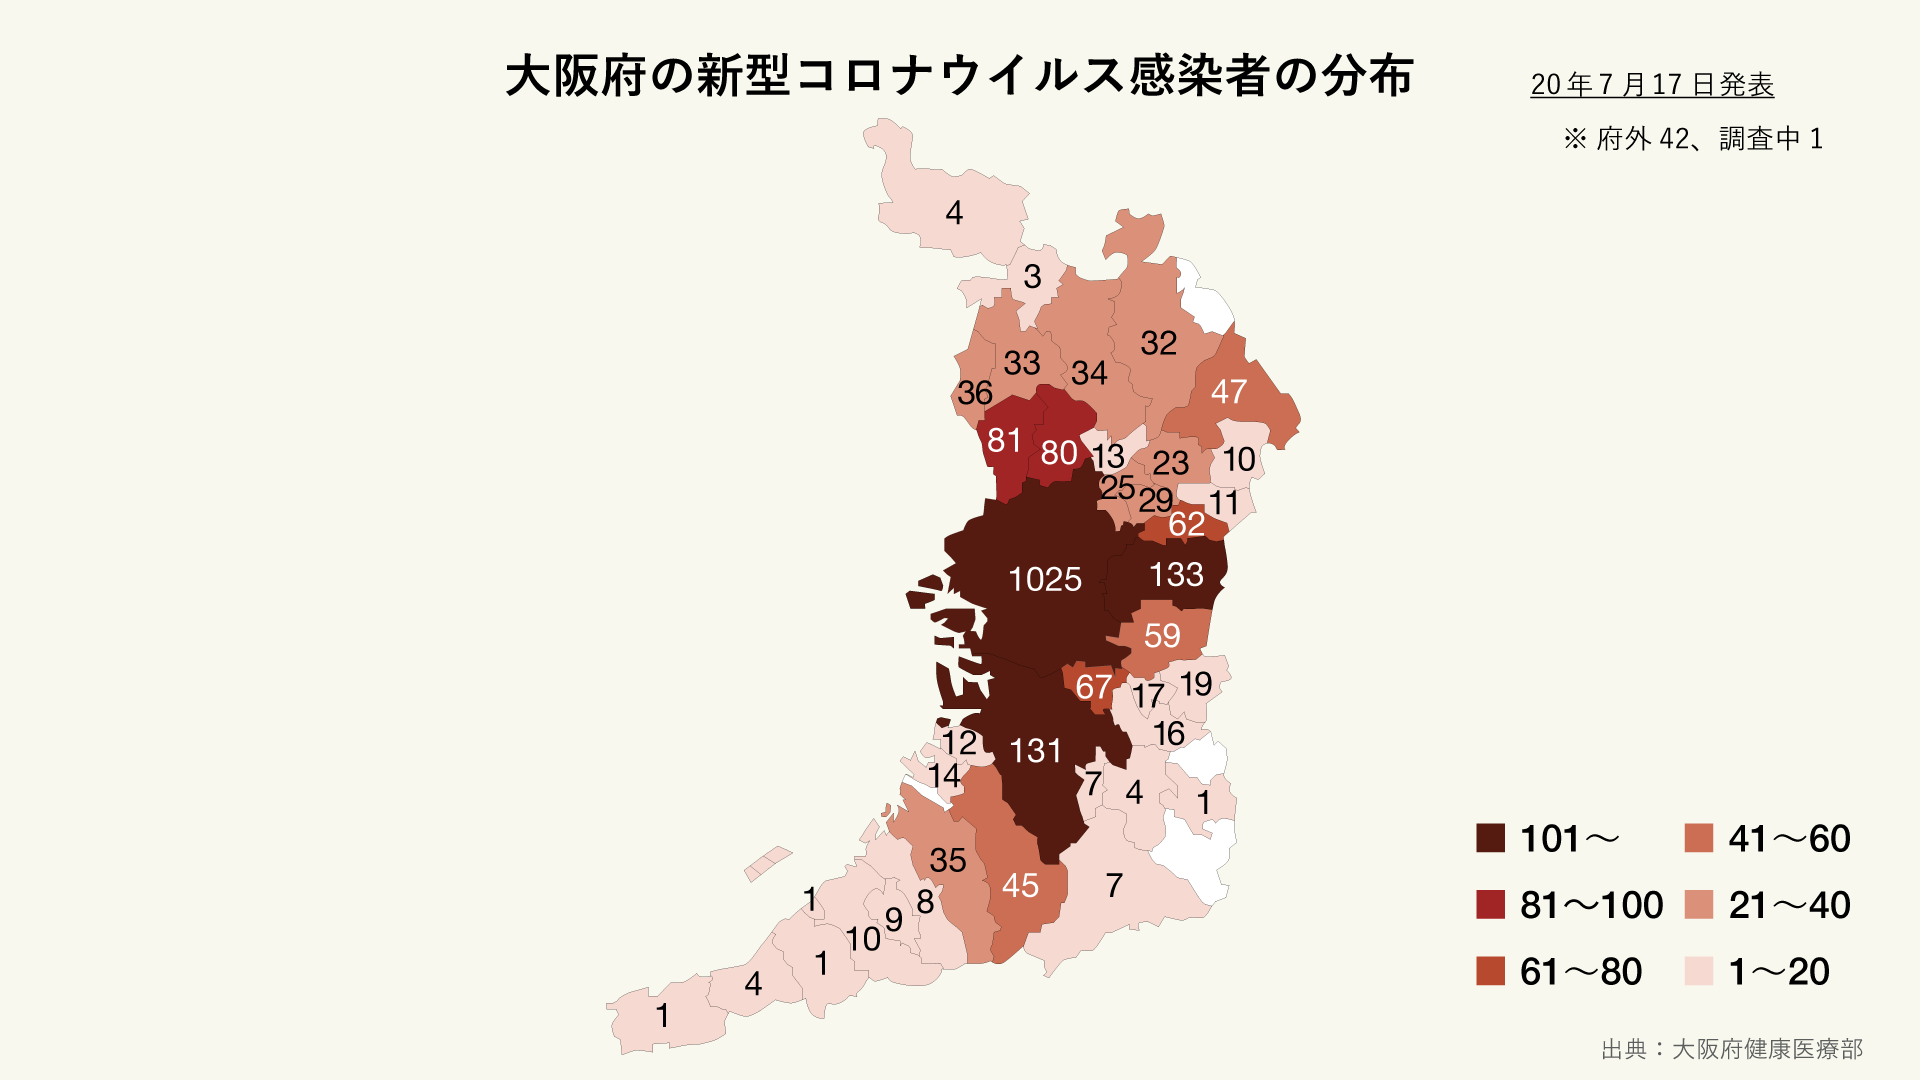 大阪府の新型コロナウイルス感染者の分布マップ 市町村別 グラフストック